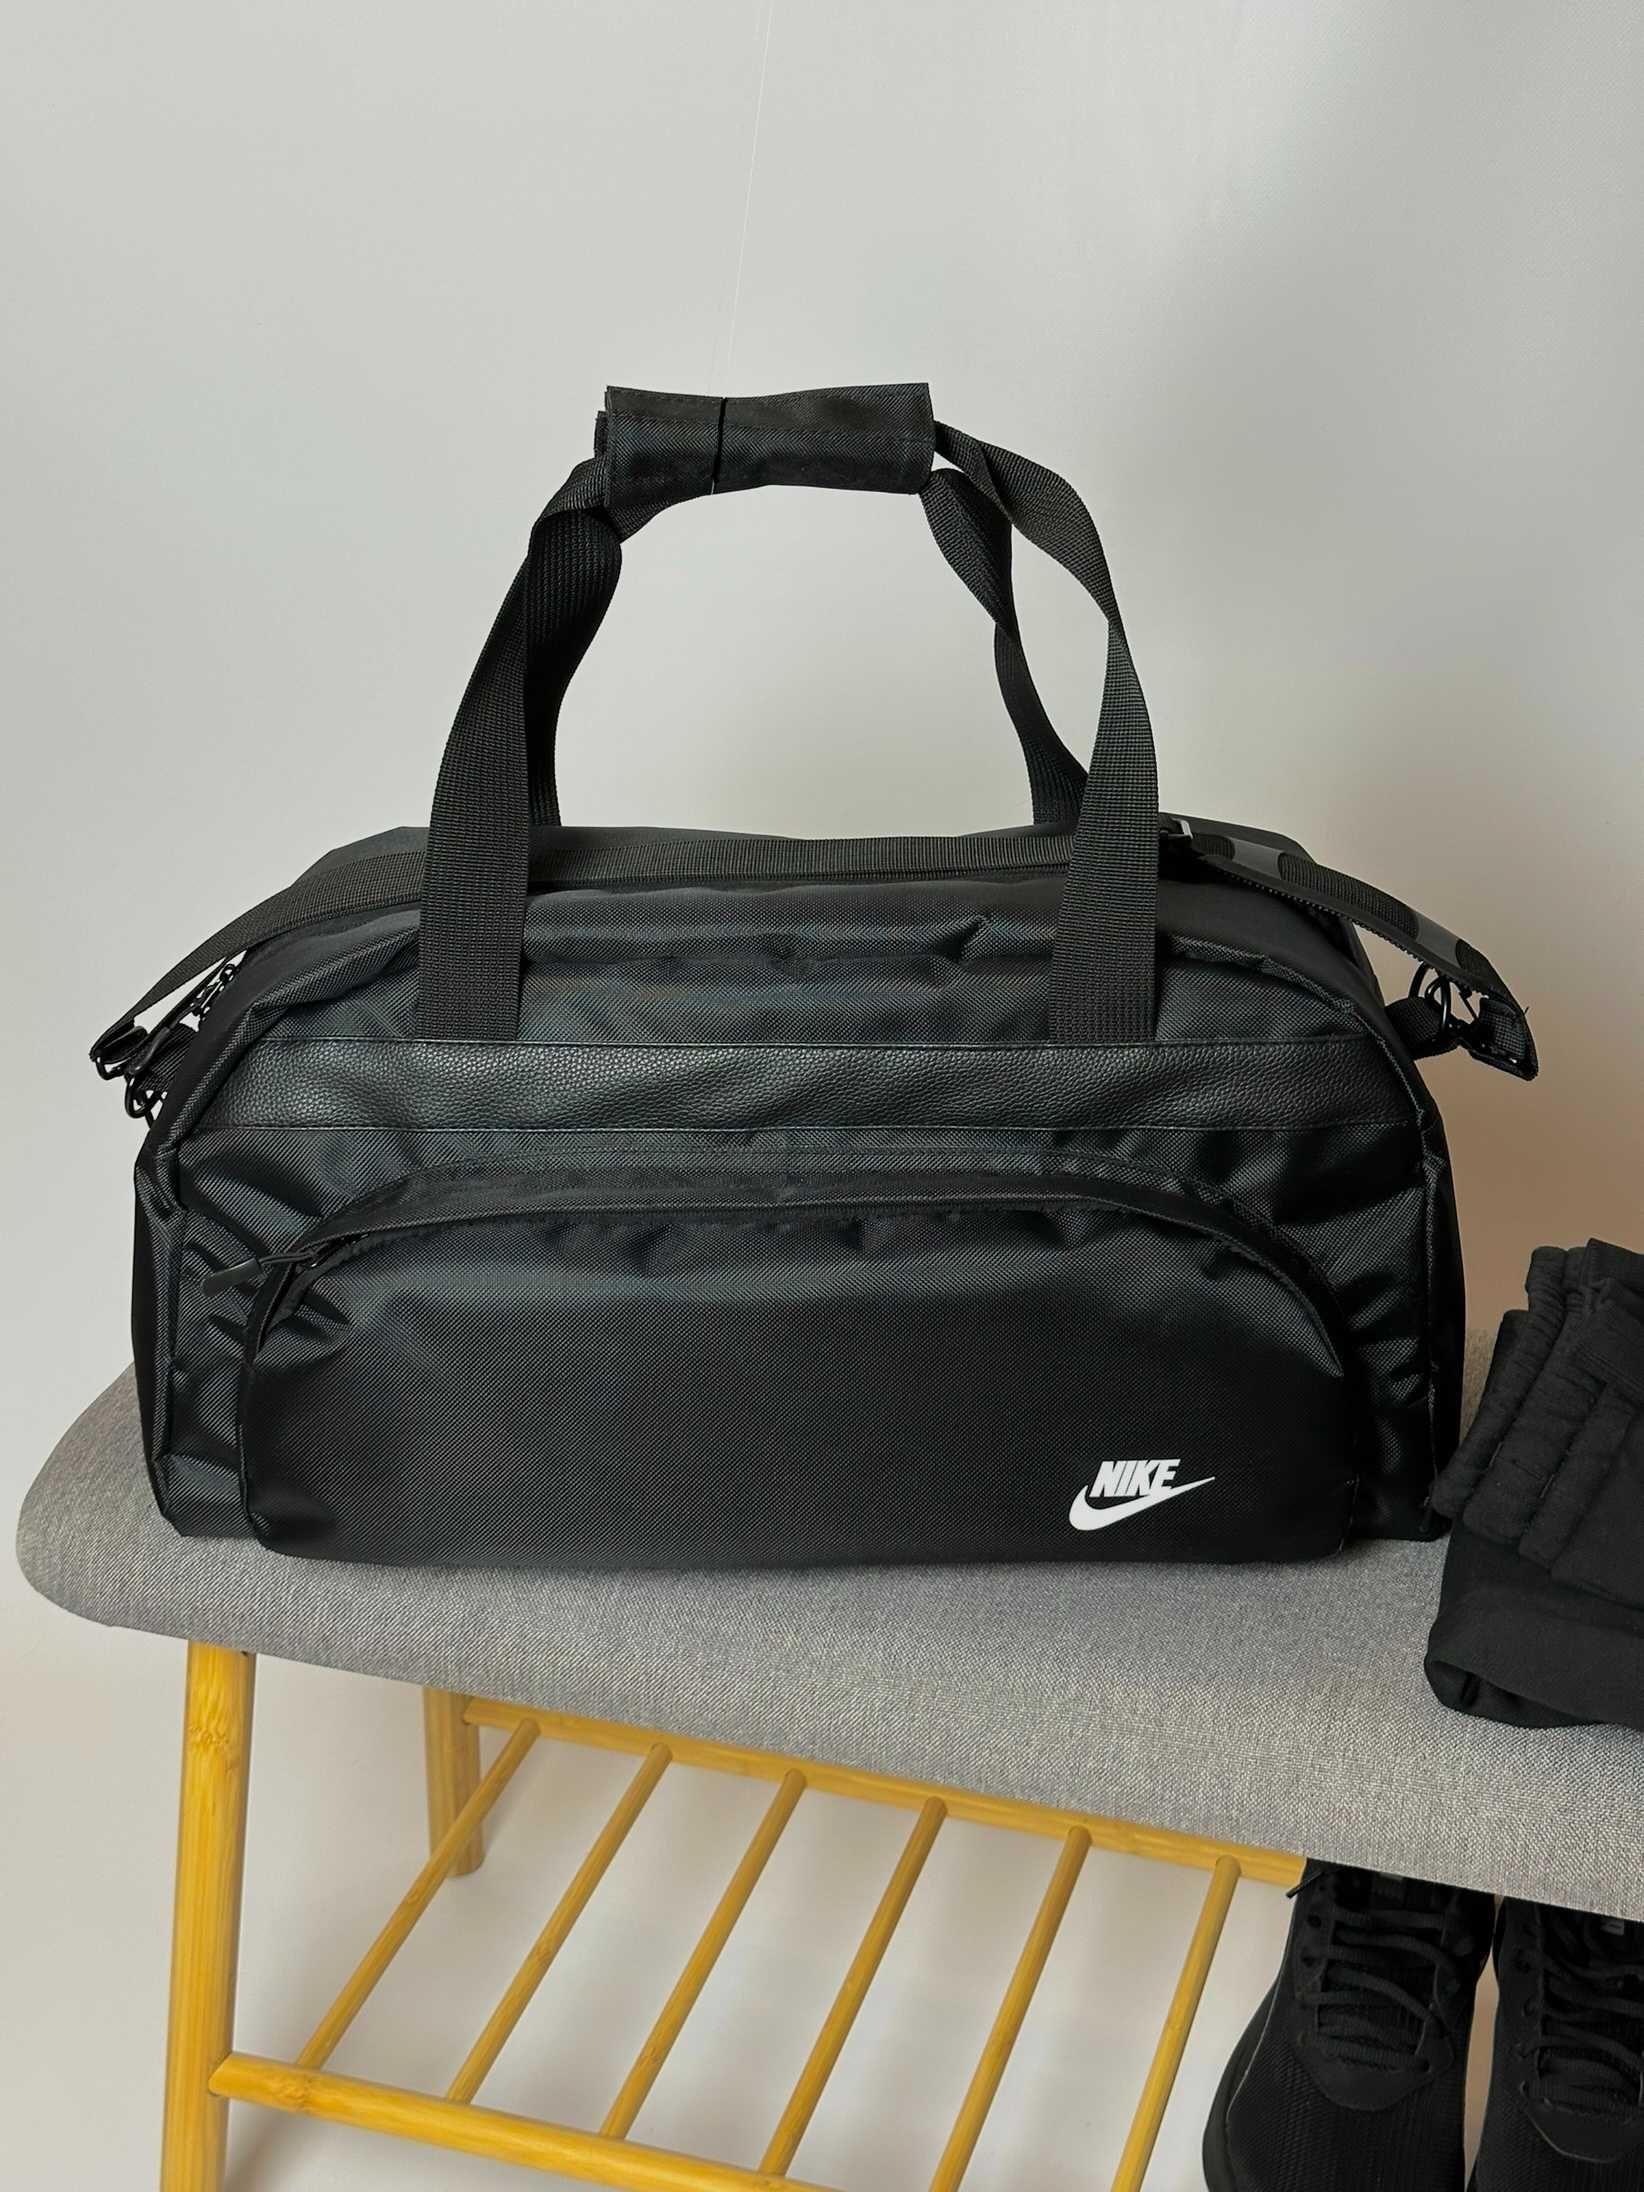 Спортивная сумка Nike для спорта | Дорожная сумка Найк для путешествий